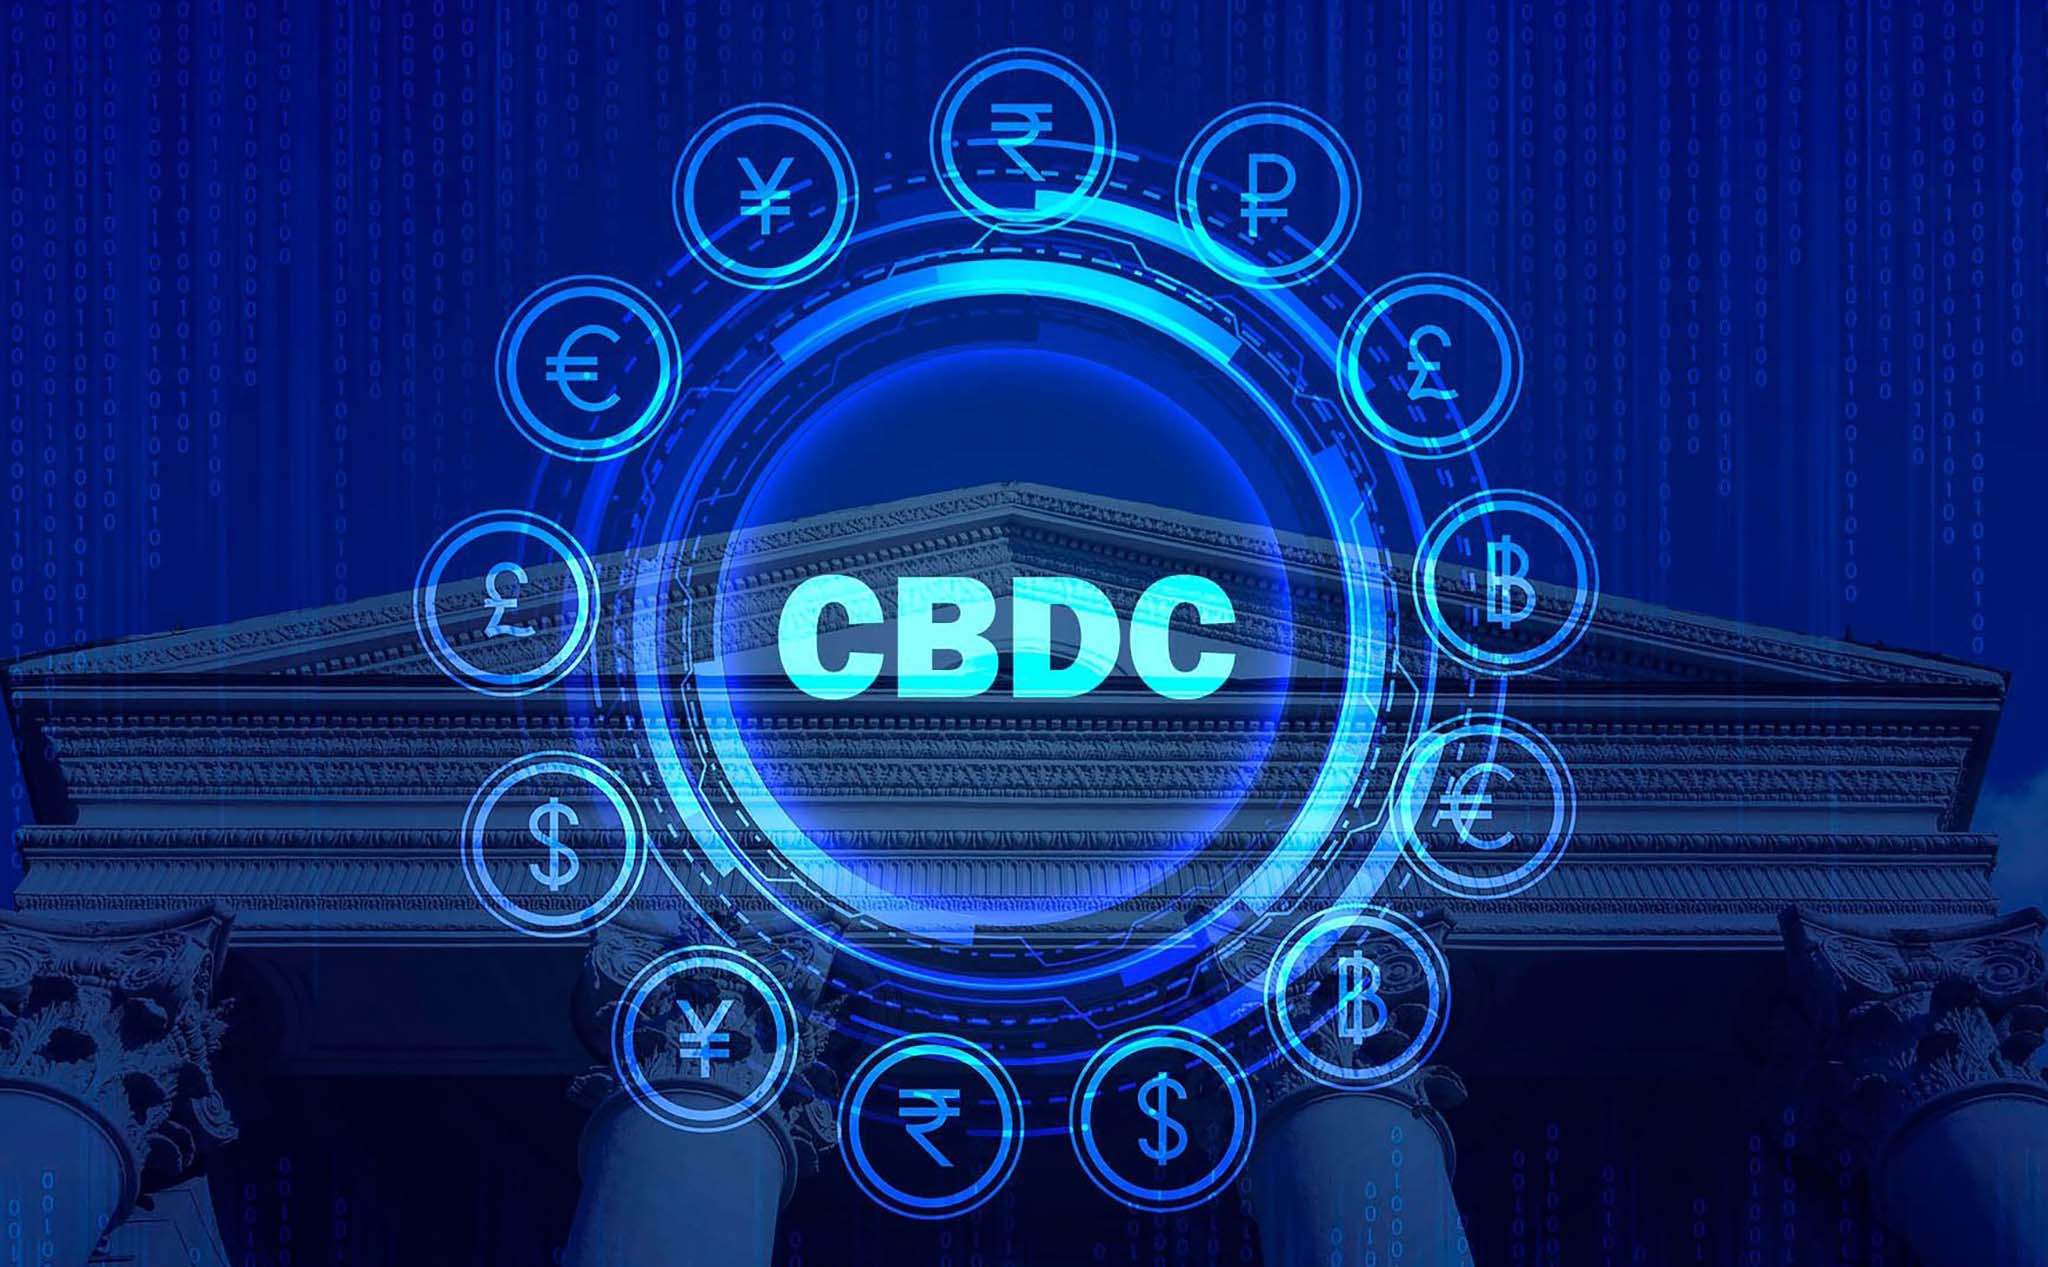 Úc, Malaysia, Singapore và Nam Phi sẽ thử nghiệm thanh toán xuyên biên giới bằng CBDC